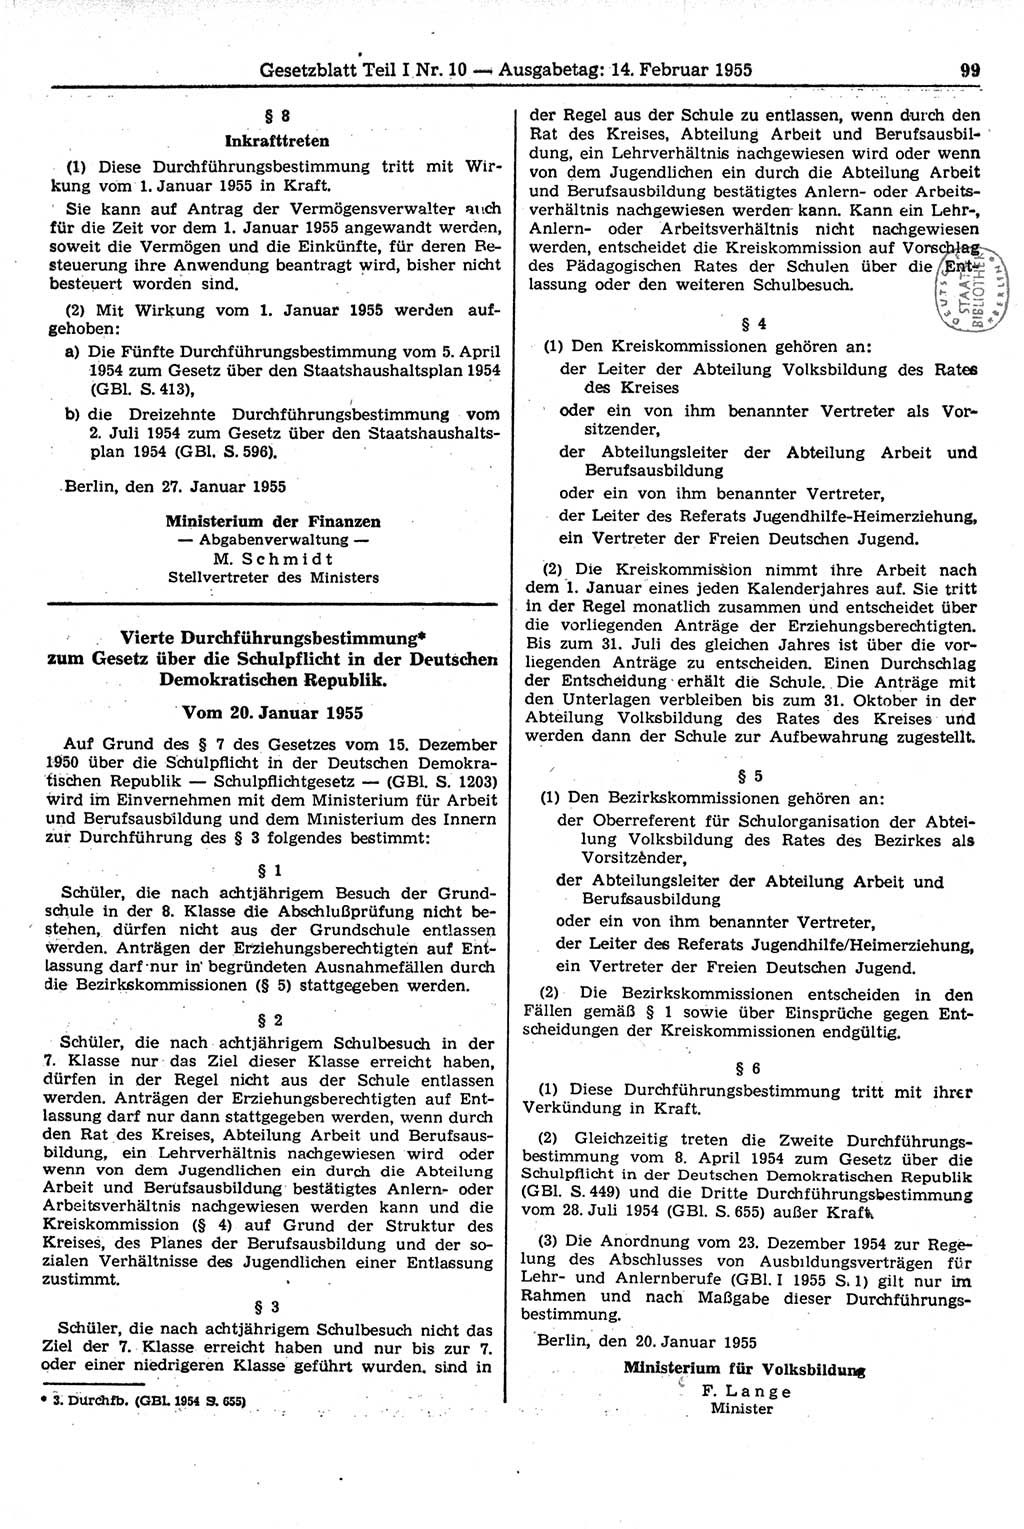 Gesetzblatt (GBl.) der Deutschen Demokratischen Republik (DDR) Teil Ⅰ 1955, Seite 99 (GBl. DDR Ⅰ 1955, S. 99)